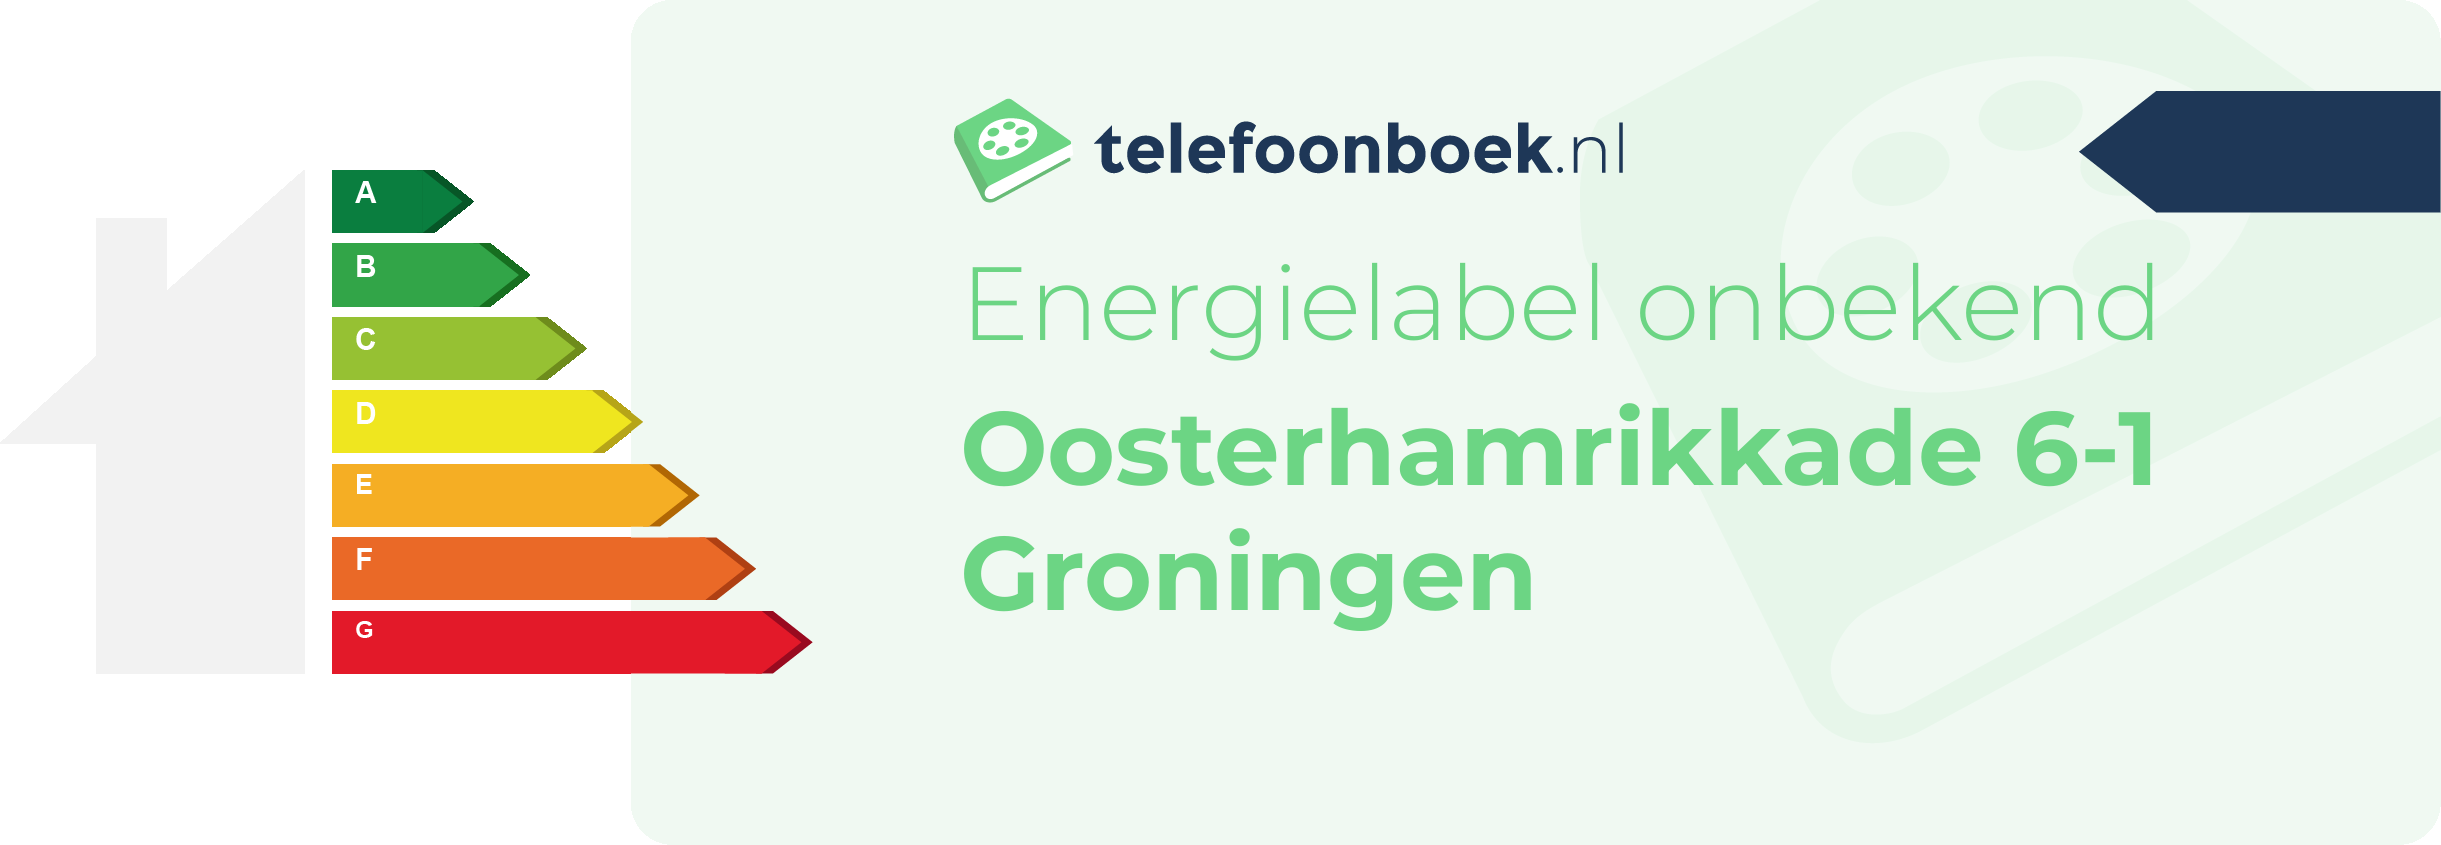 Energielabel Oosterhamrikkade 6-1 Groningen